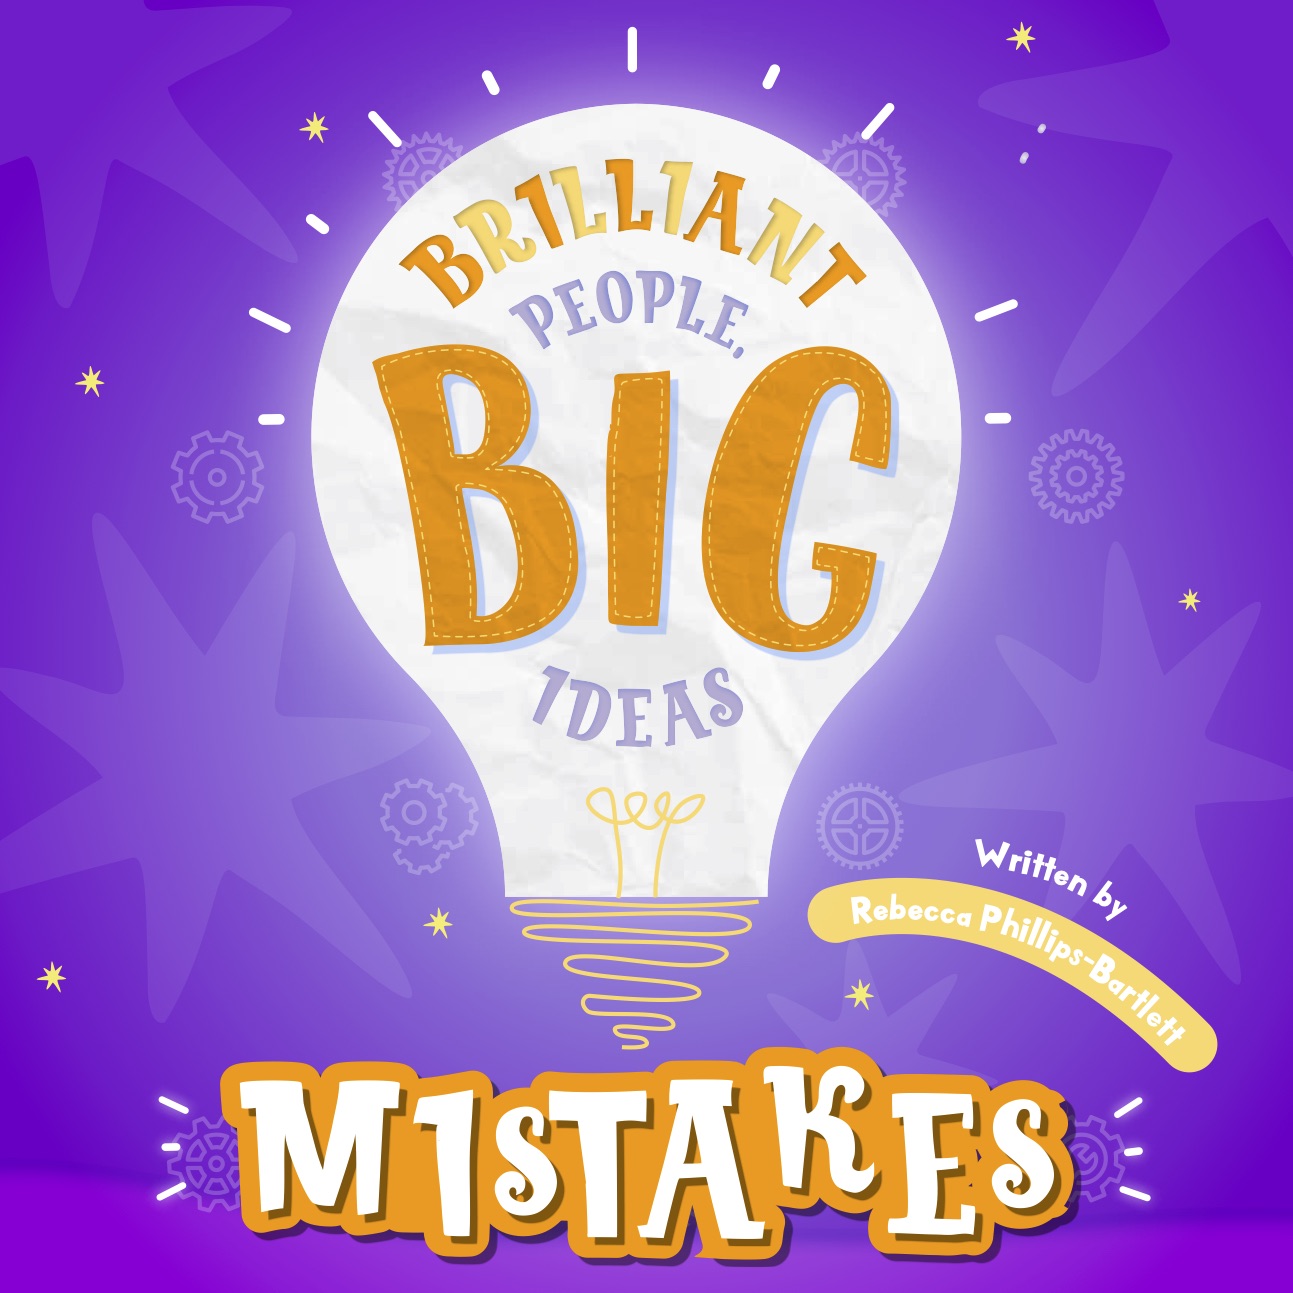 Brilliant People, Big Ideas – Mistakes